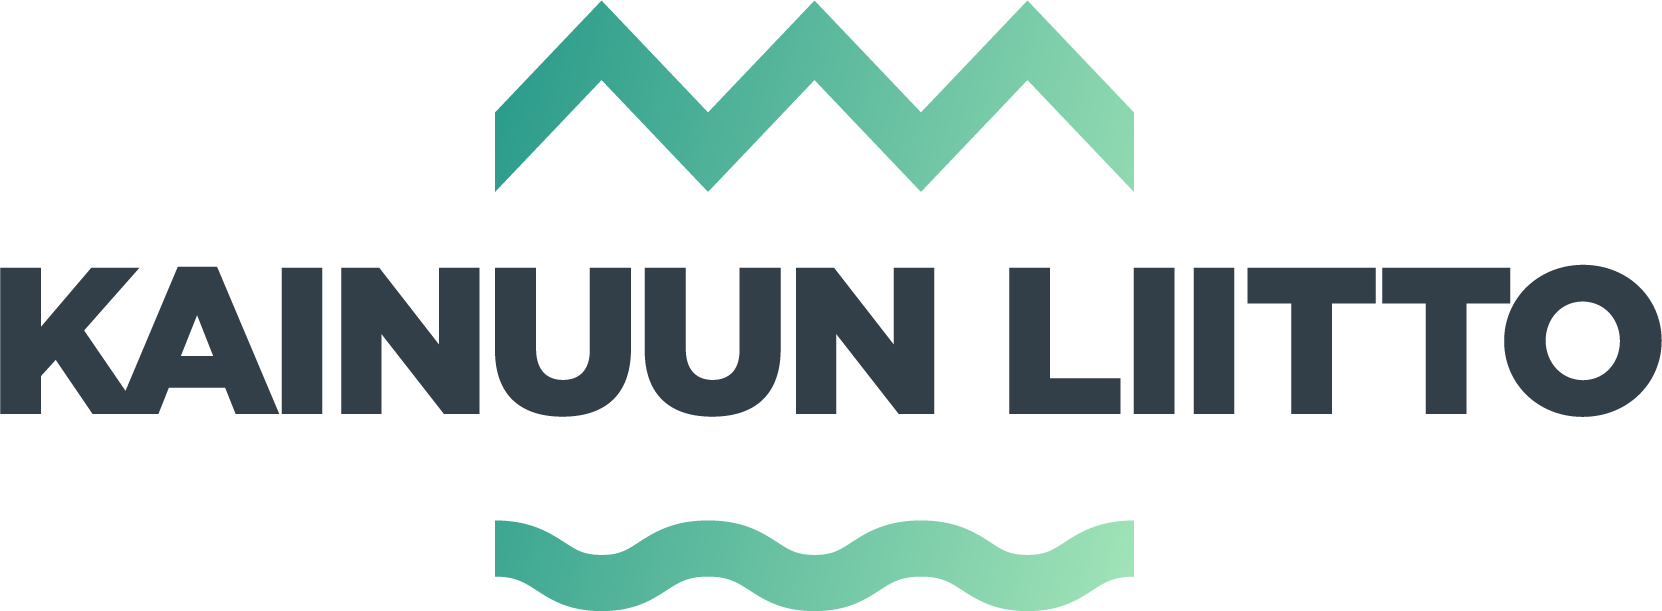 kainuunliitto logo